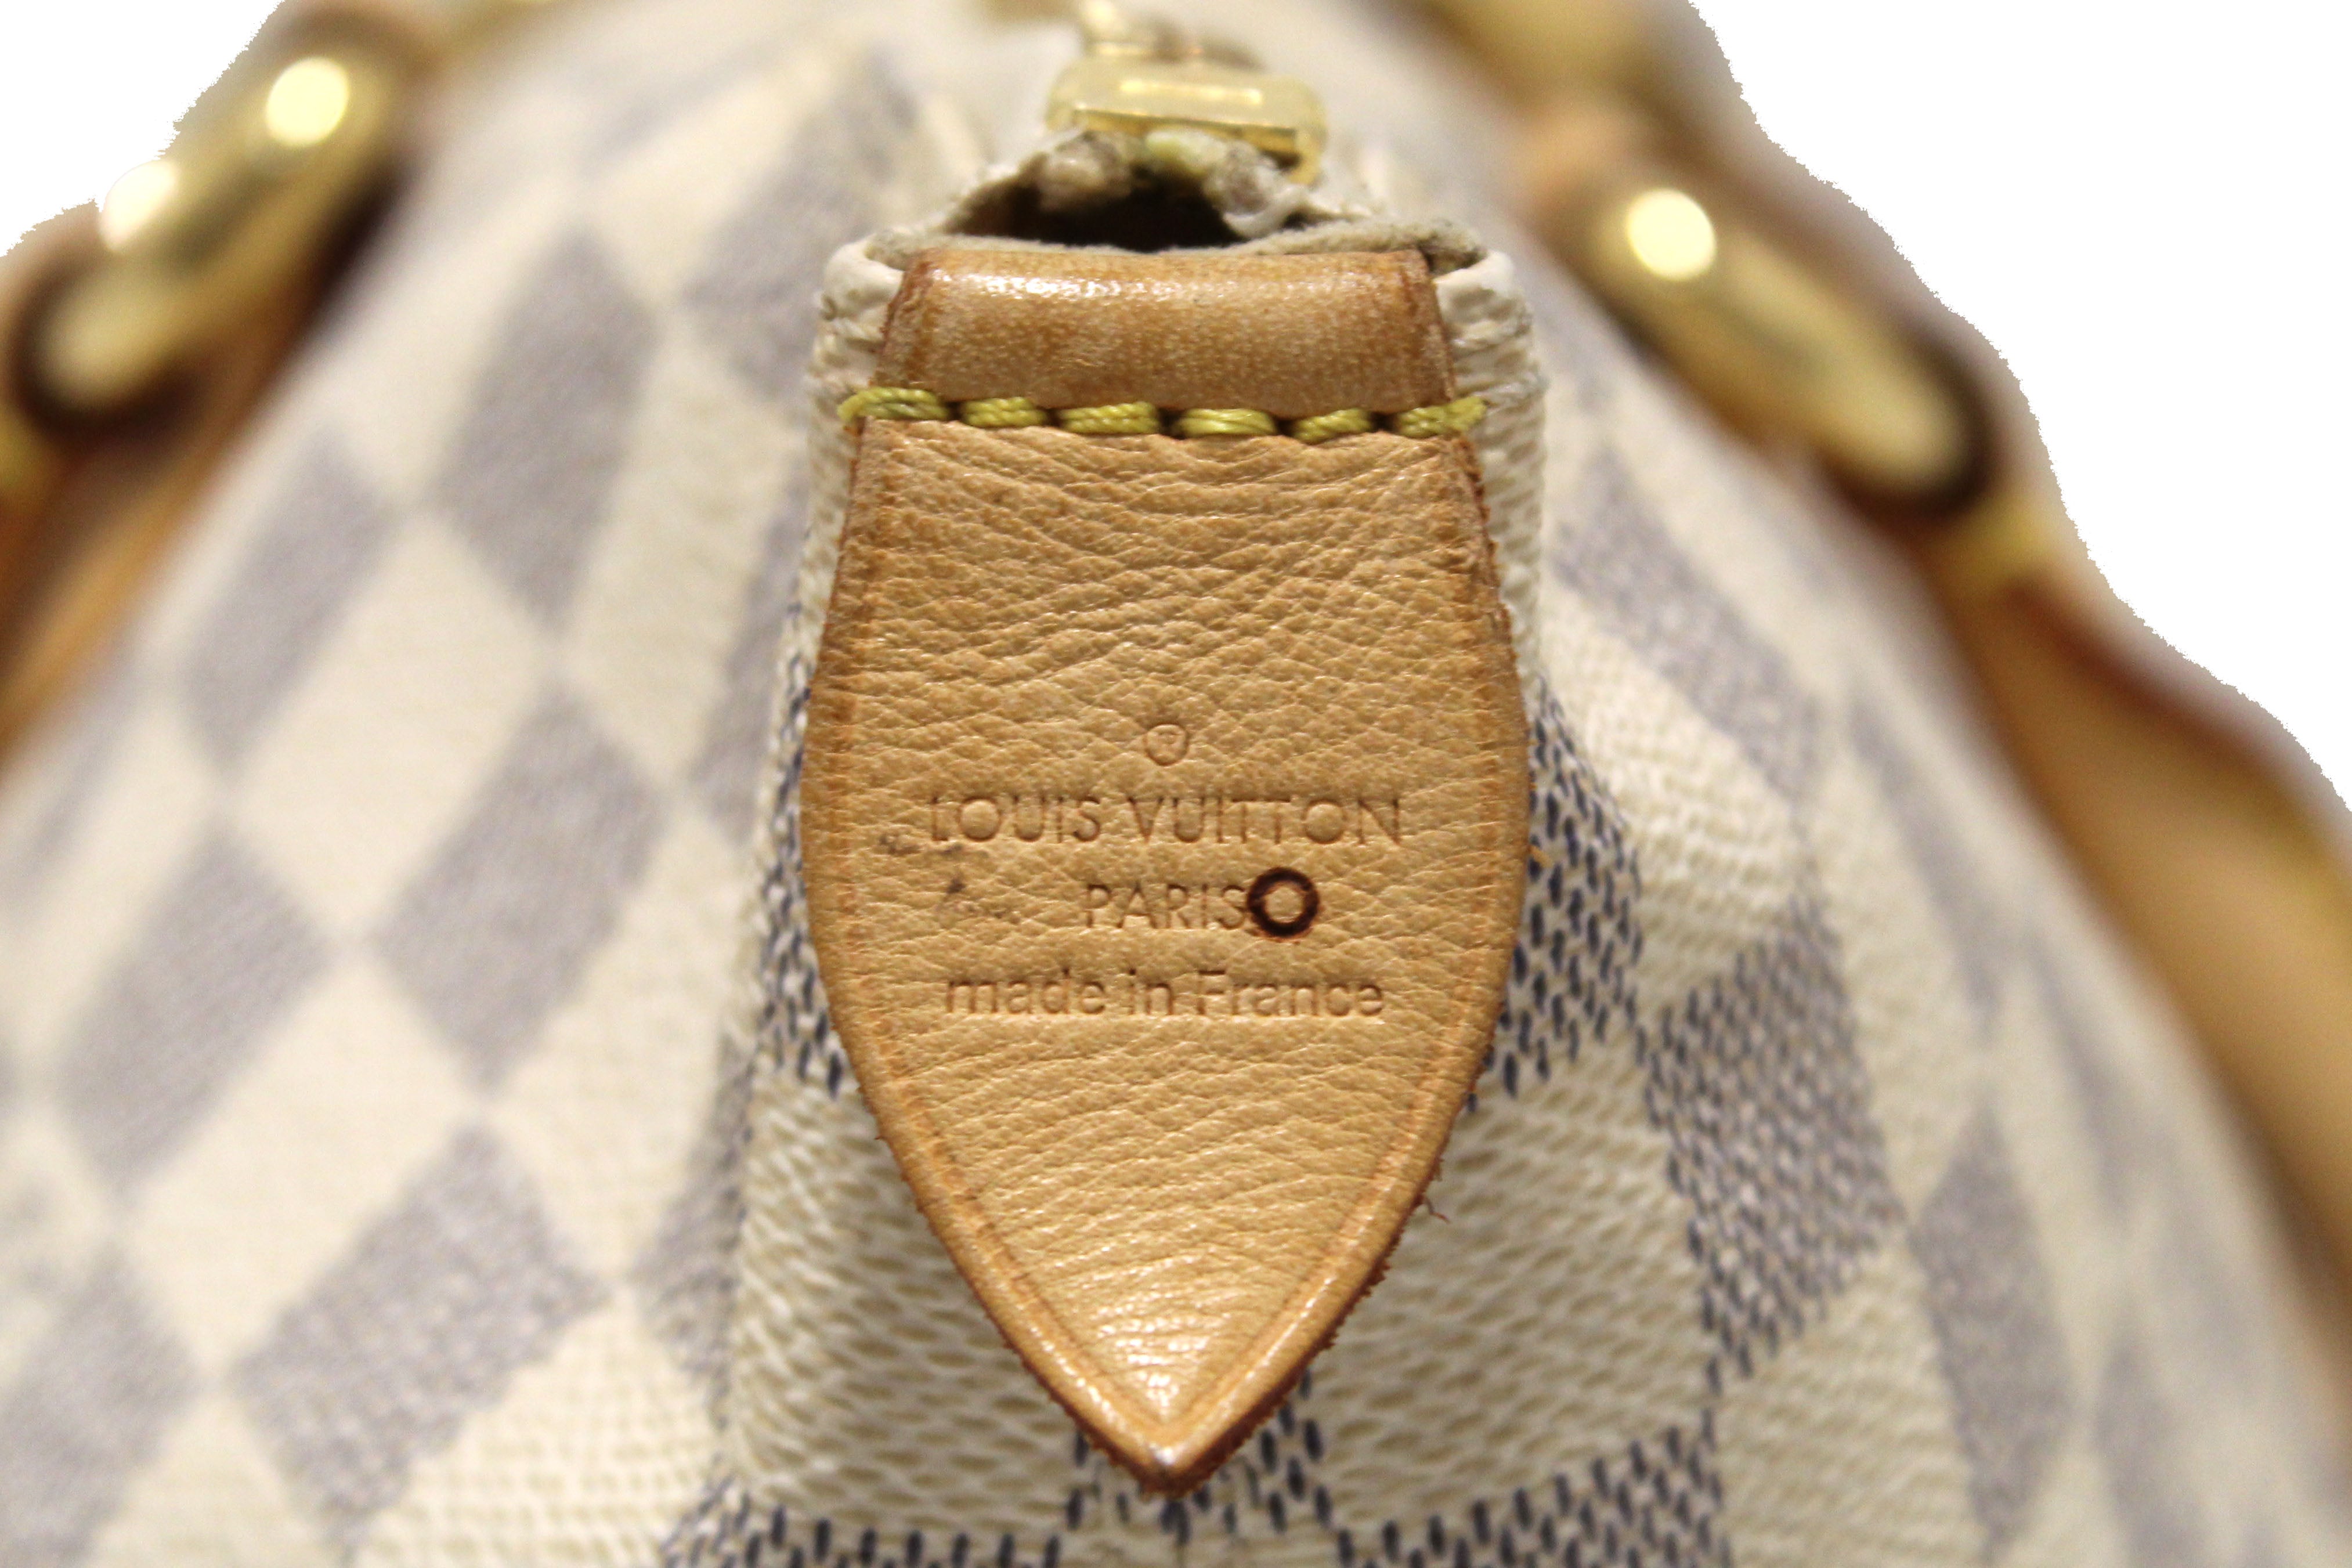 Authentic Louis Vuitton Damier Azur Saleya GM Shoulder Bag